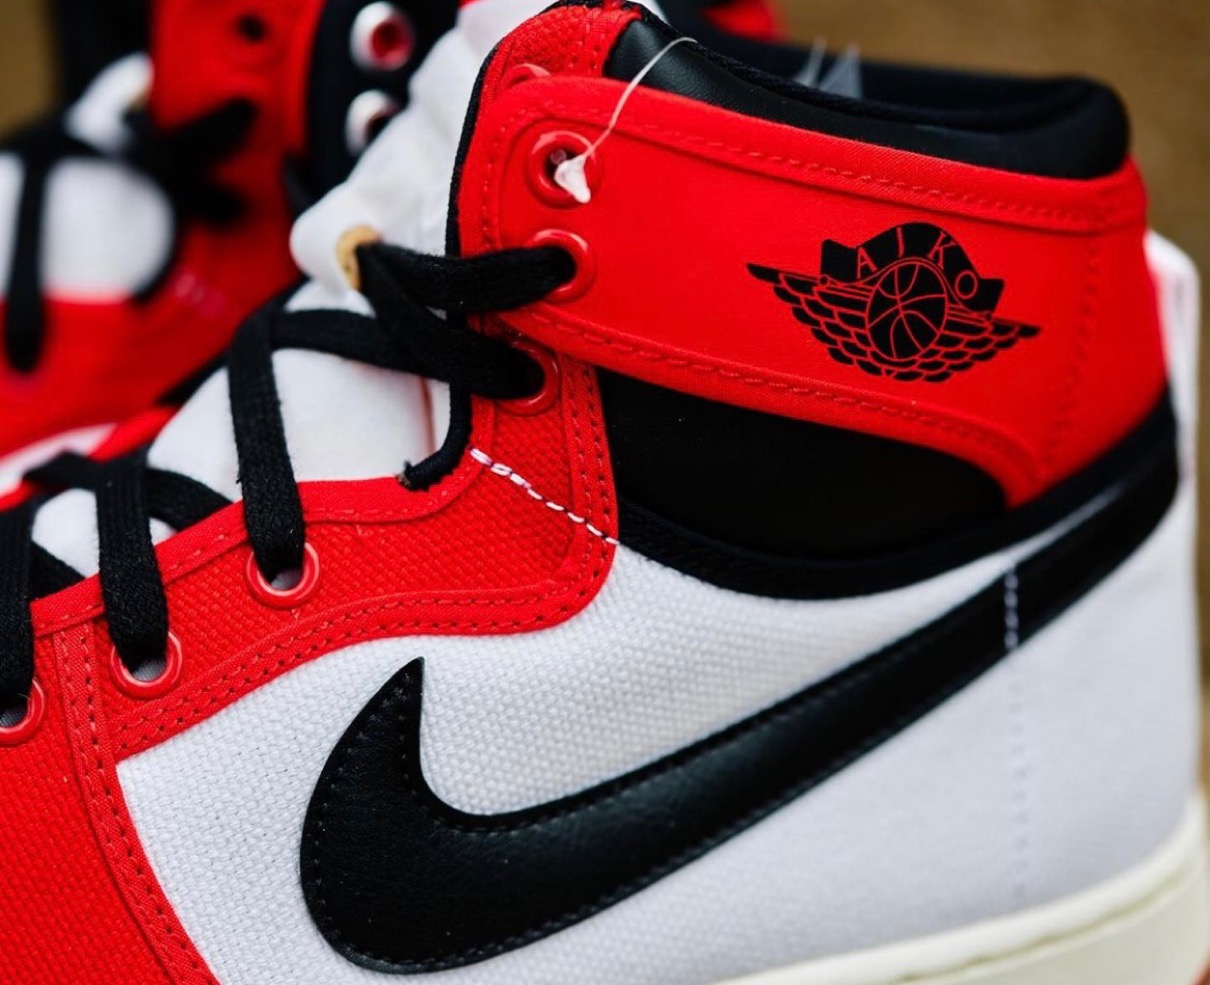 Nike】Air Jordan 1 KO “Chicago”が国内2021年5月12日に復刻発売予定 